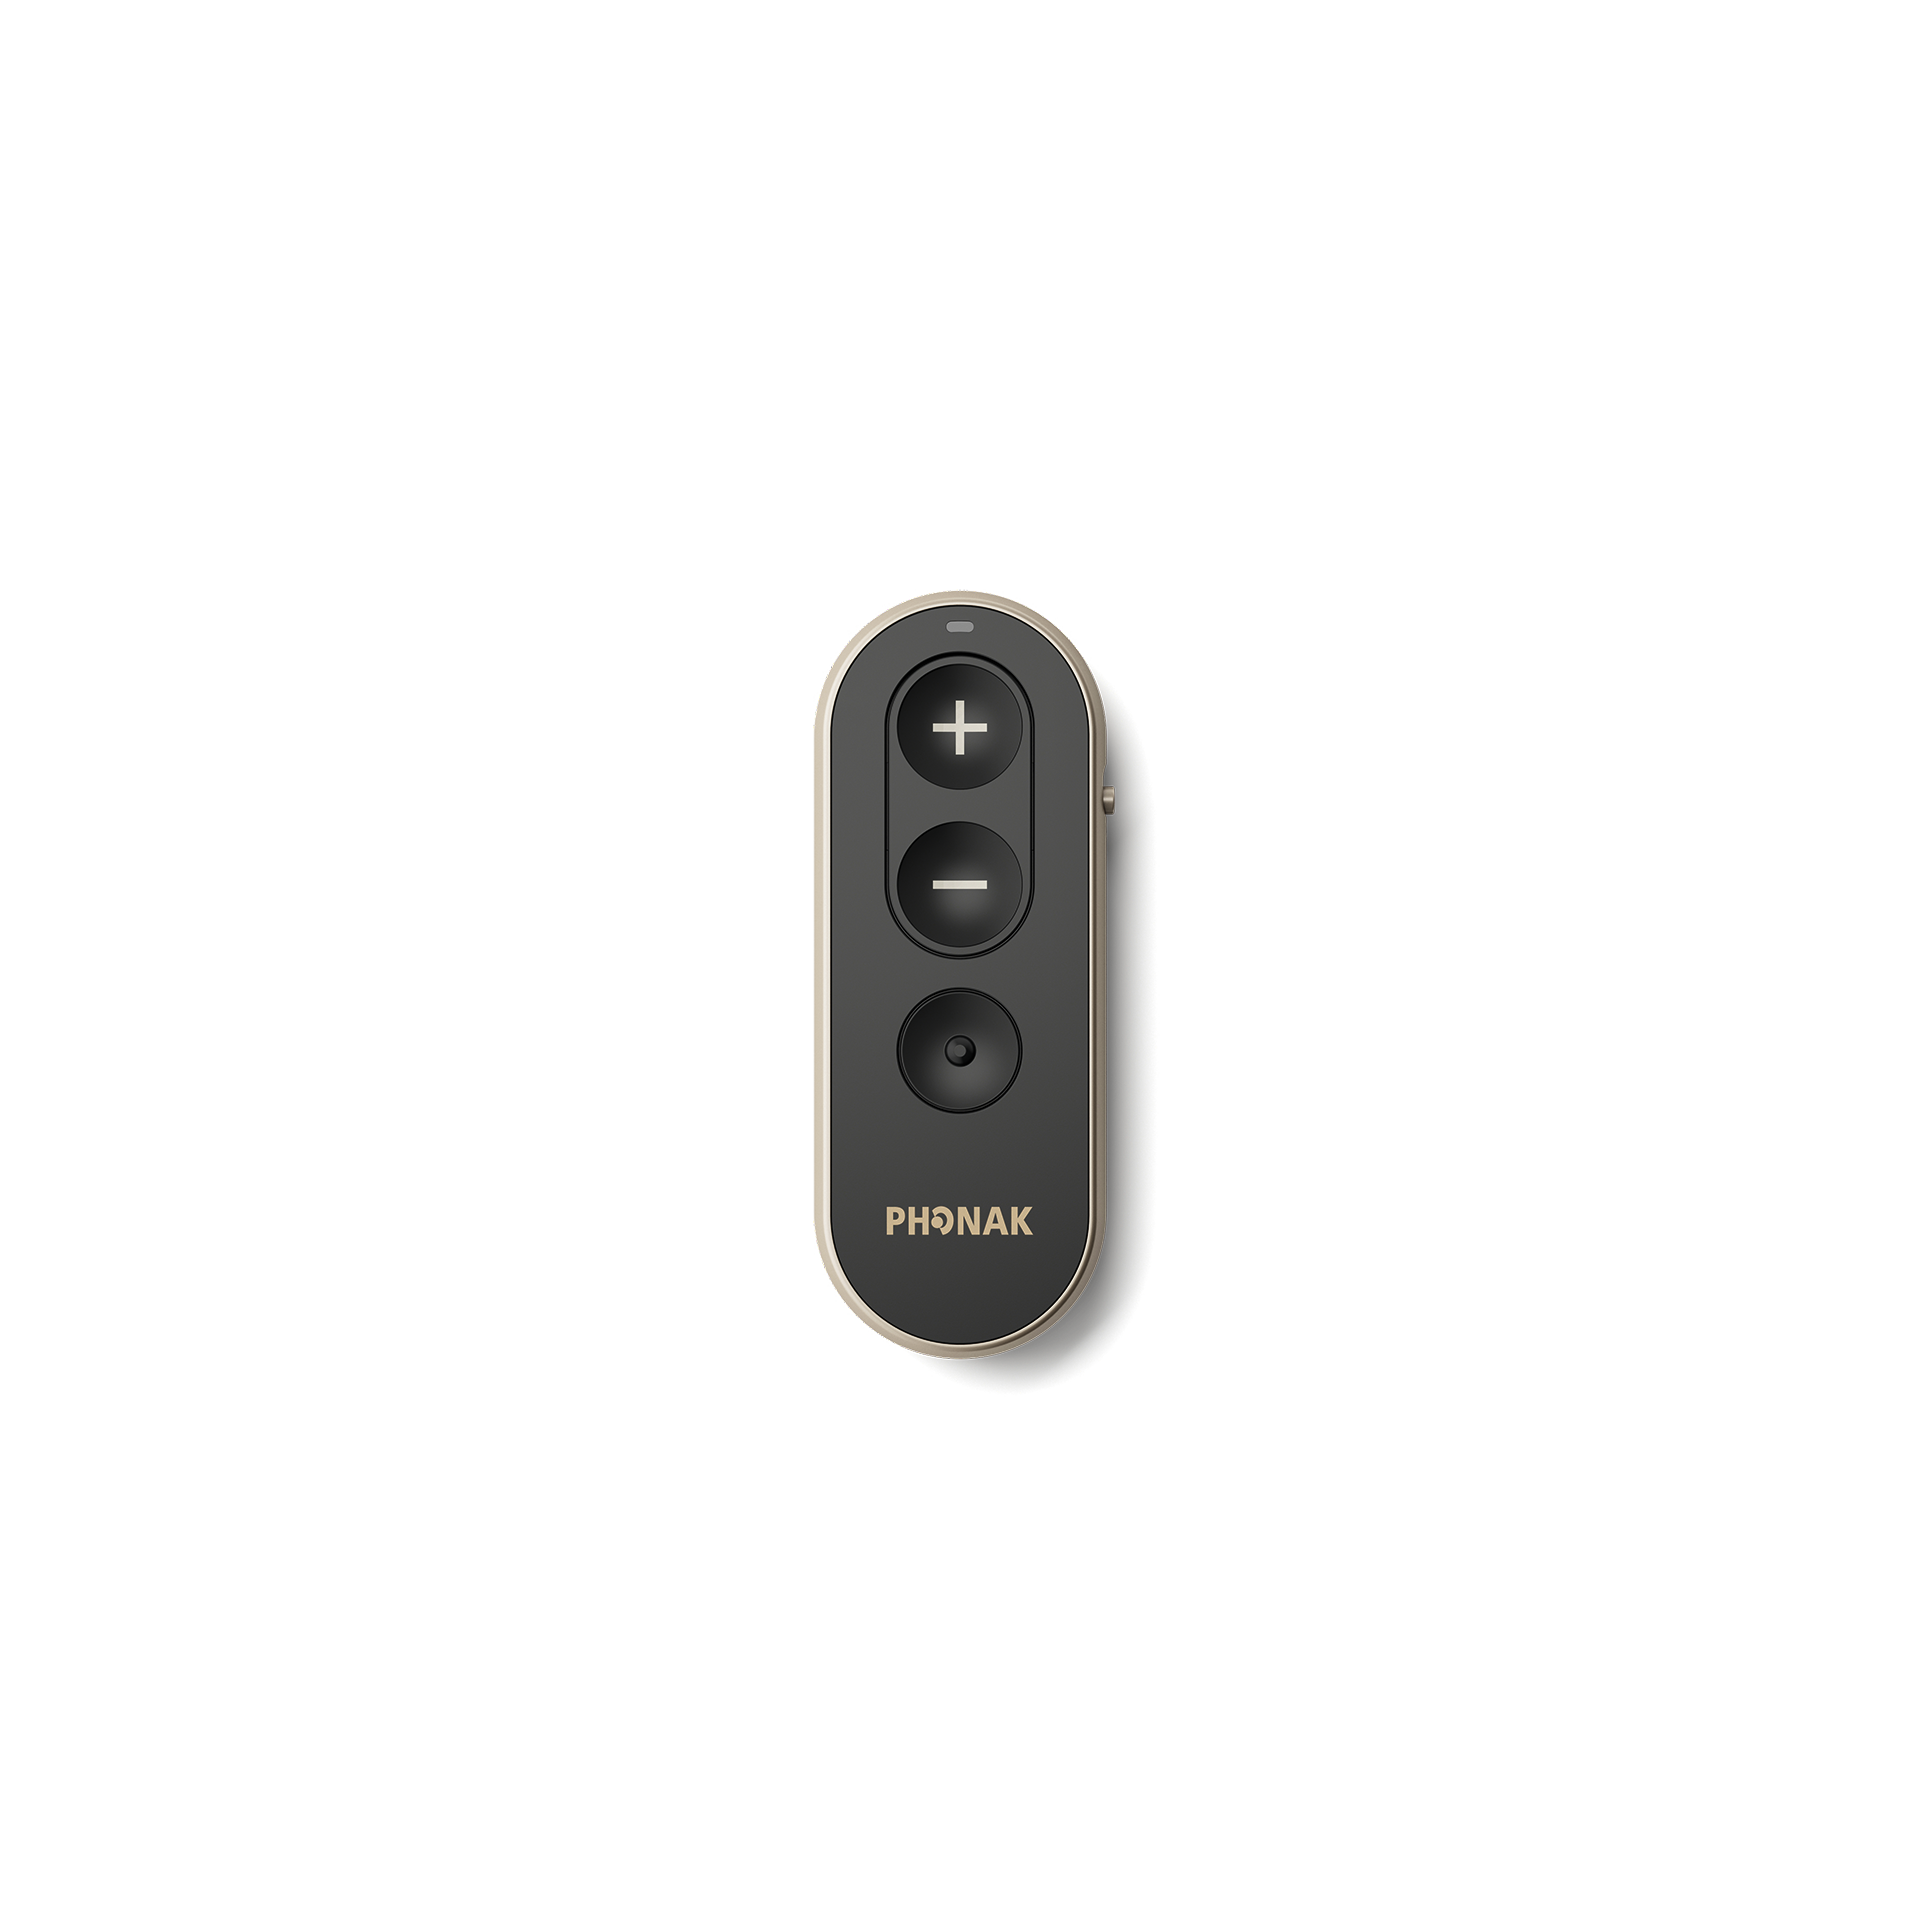 Phonak RemoteControl tilbehør til høreapparater – set forfra.